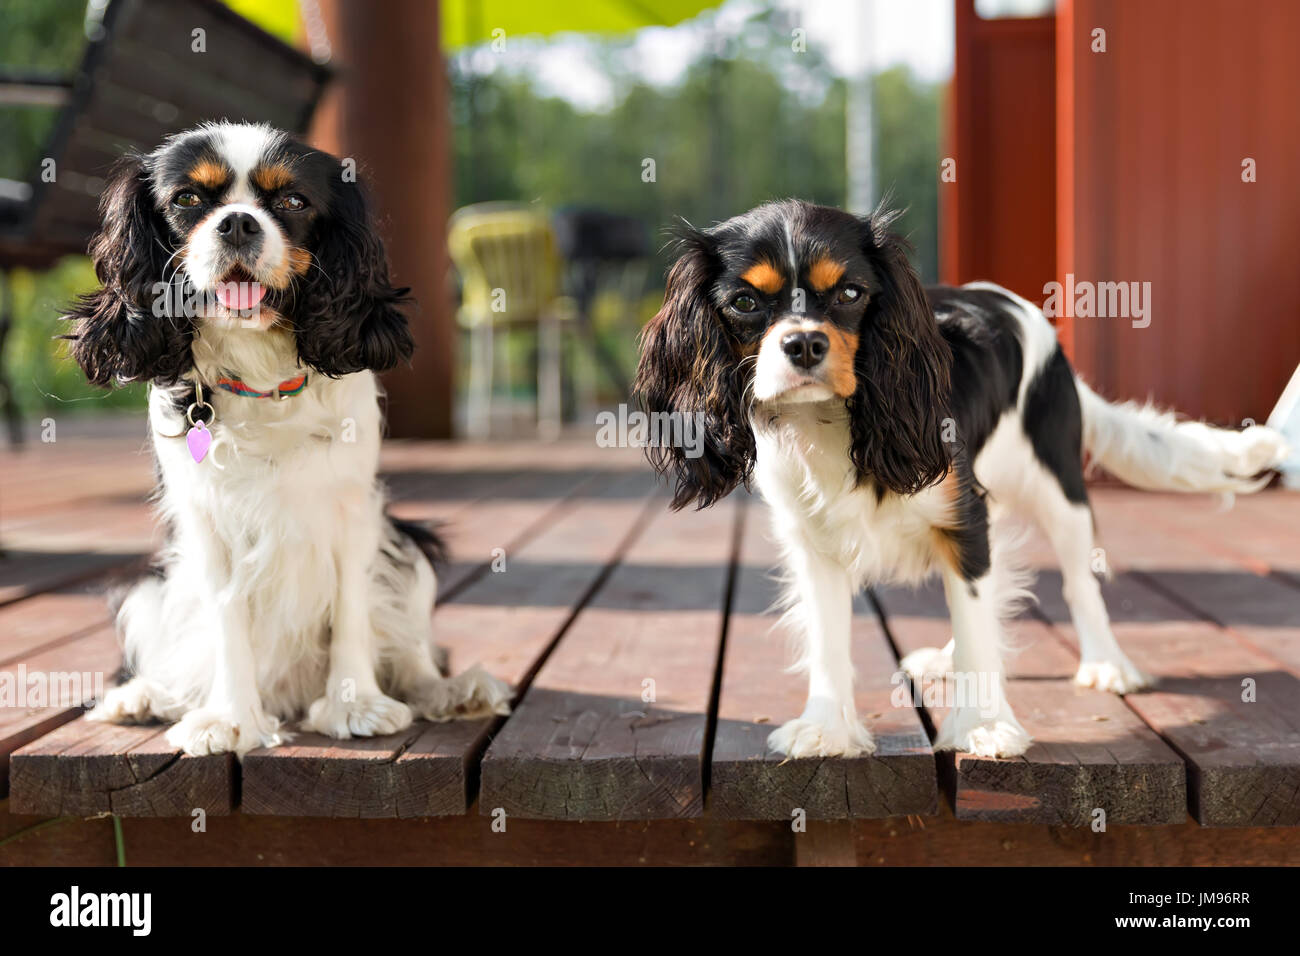 Porträt von zwei Hunden - niedliche cavalier Spaniel zusammen Stockfoto